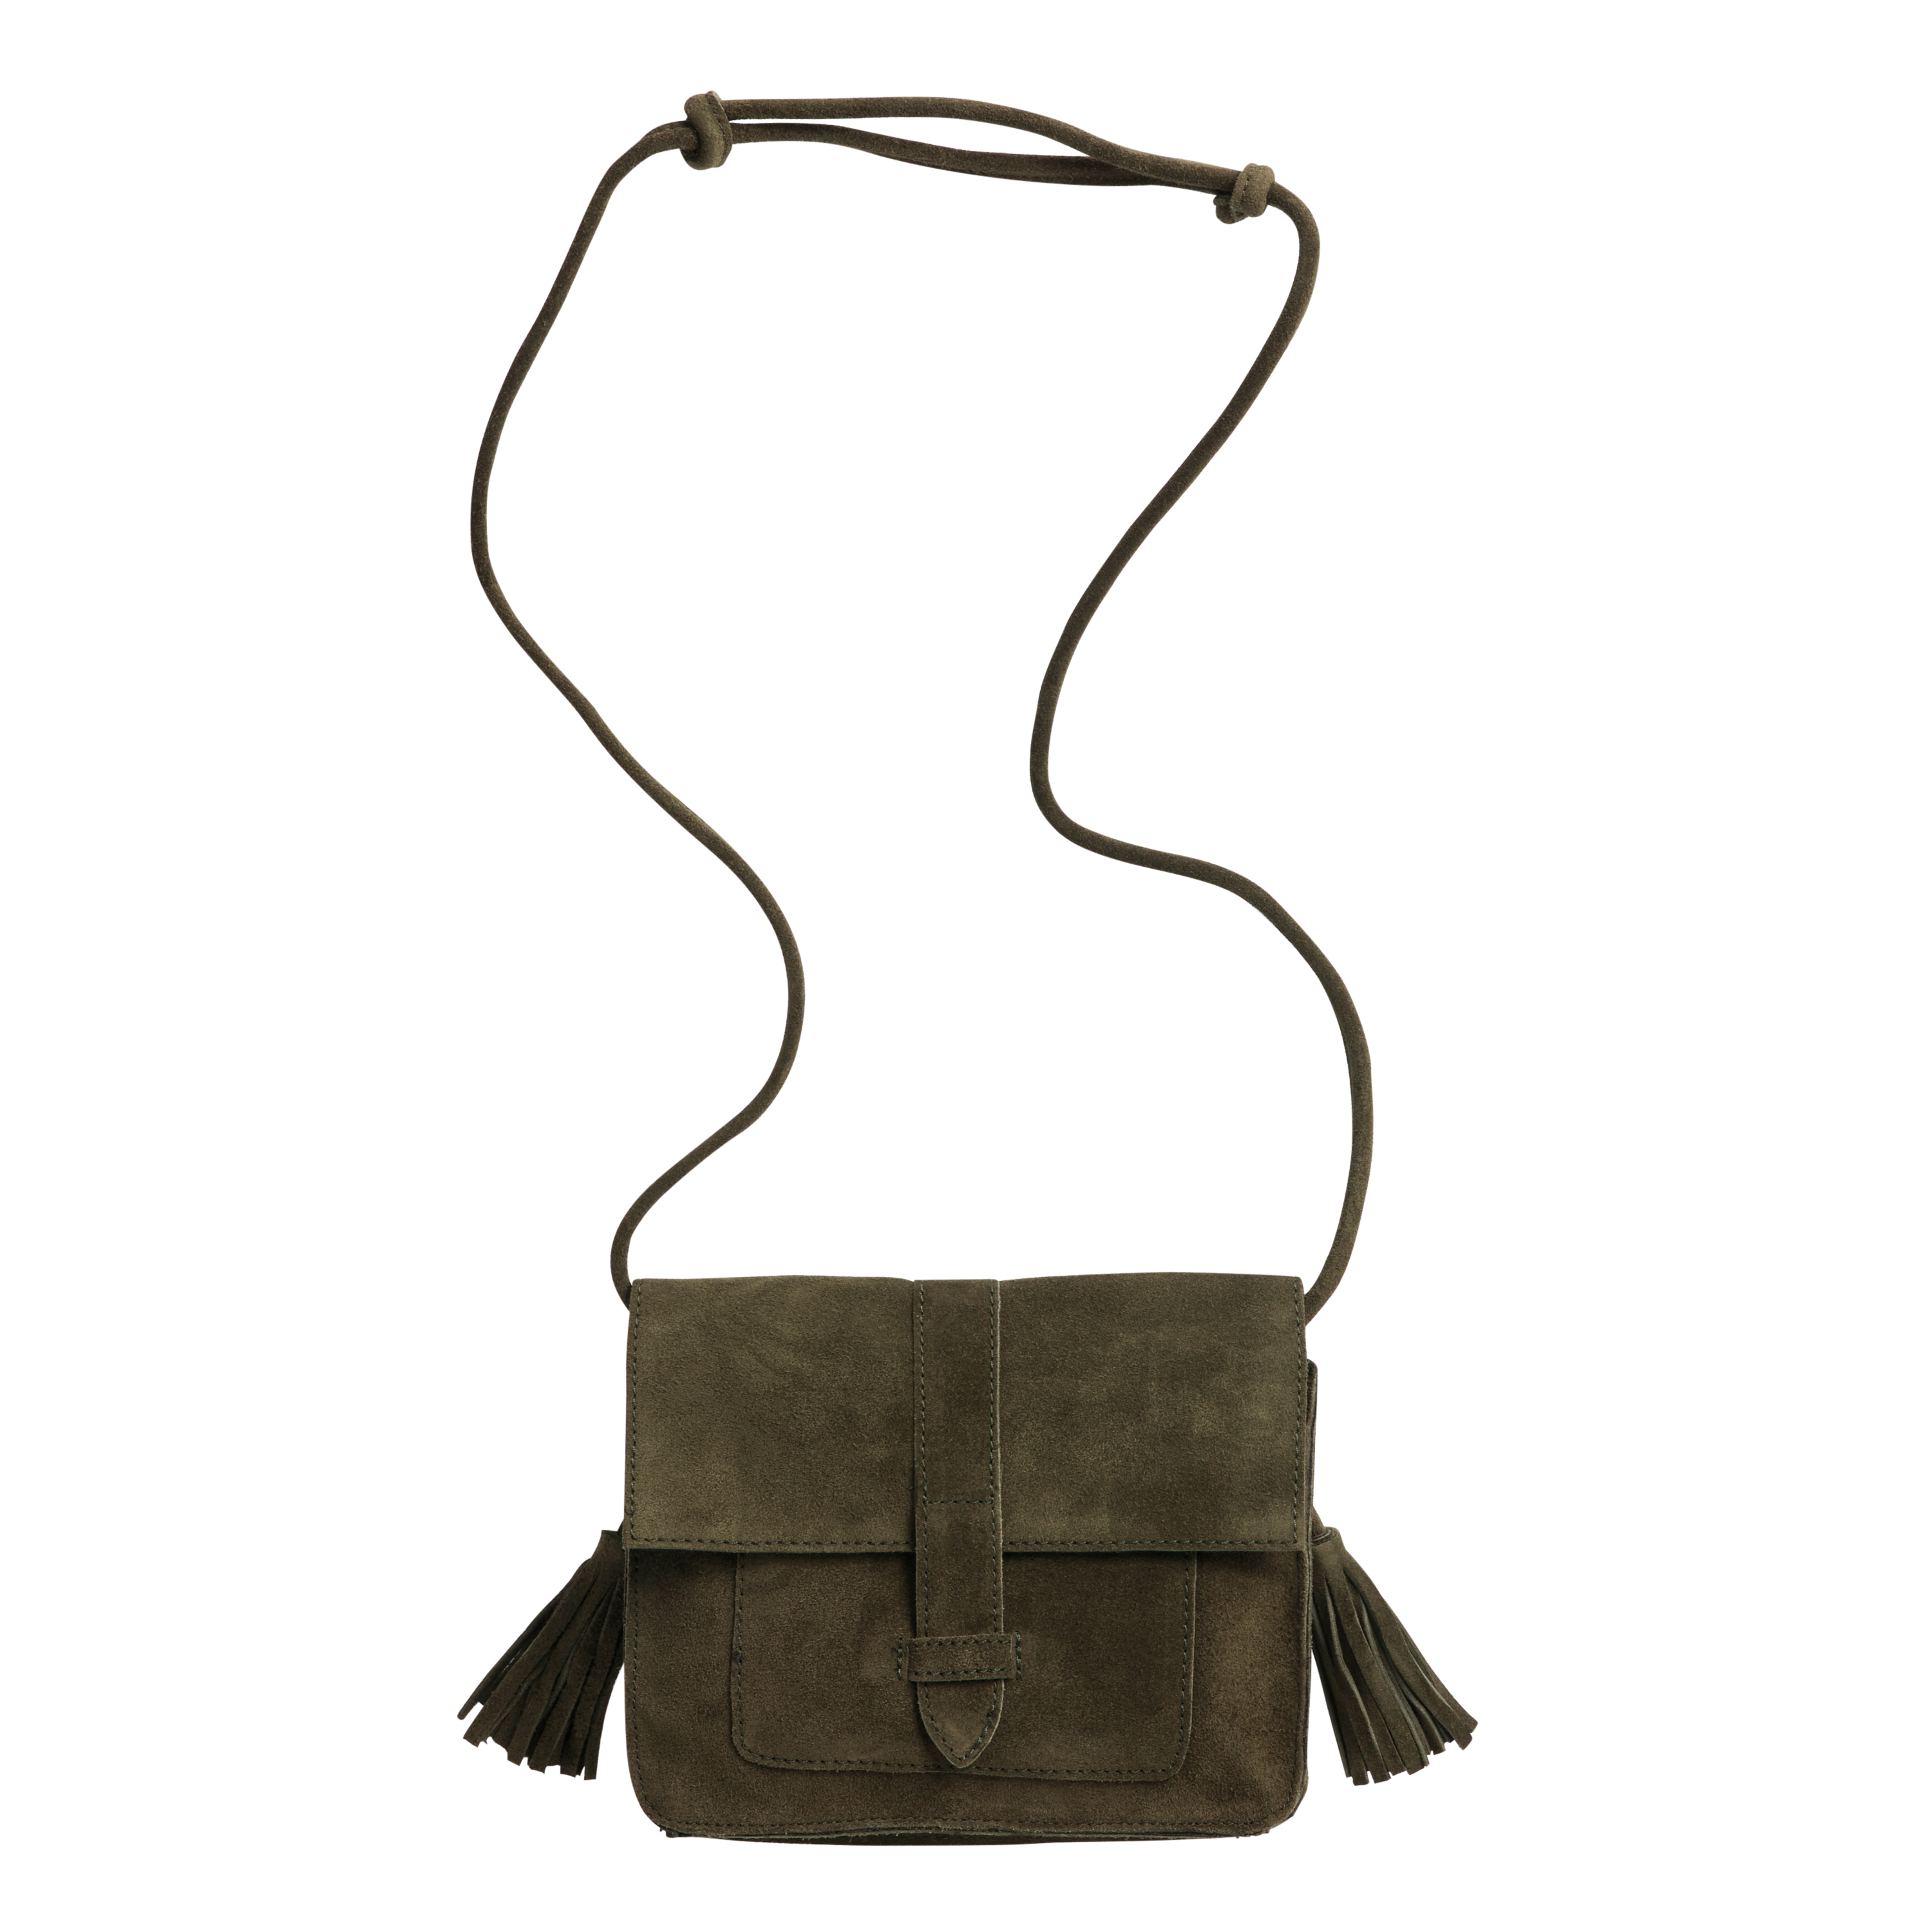 Extra large handbag with side fringe, fringe crossbody bag, modern western  style fringe purse, oversize top h…